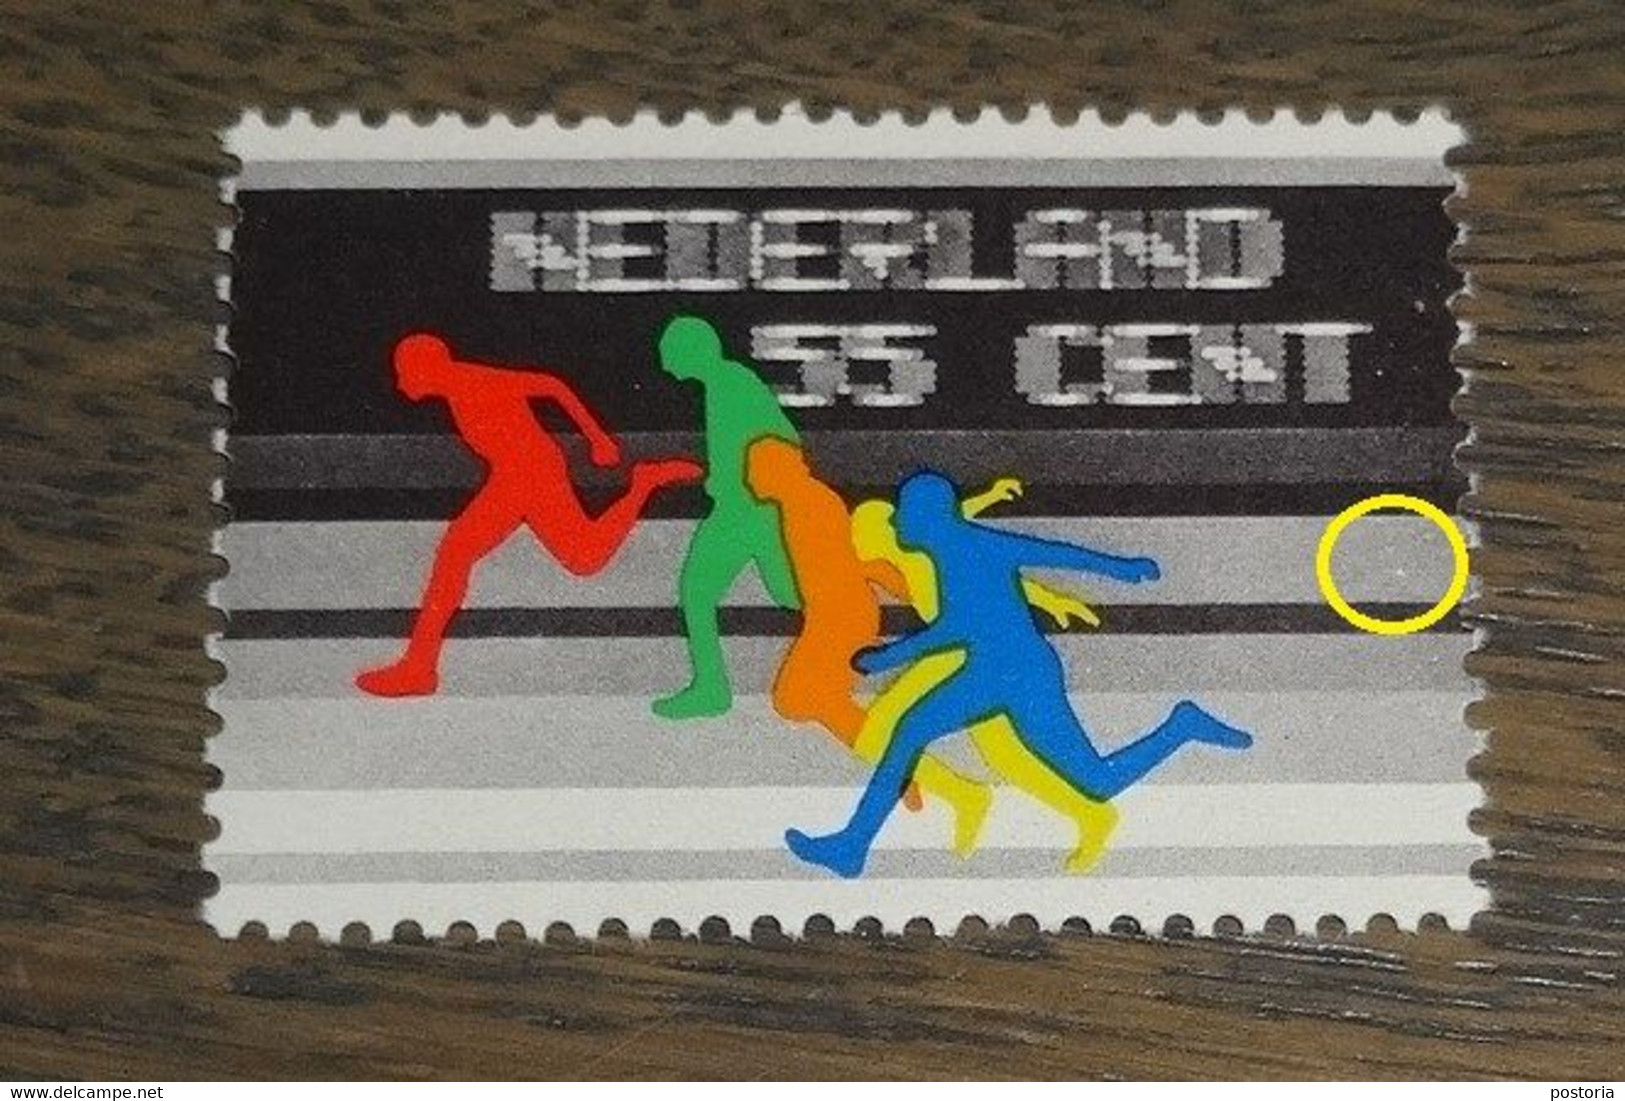 Nederland - MAST - 1093 PM2 - 1976 - Plaatfout - Postfris - Witte Punt Rechts Midden - Variedades Y Curiosidades